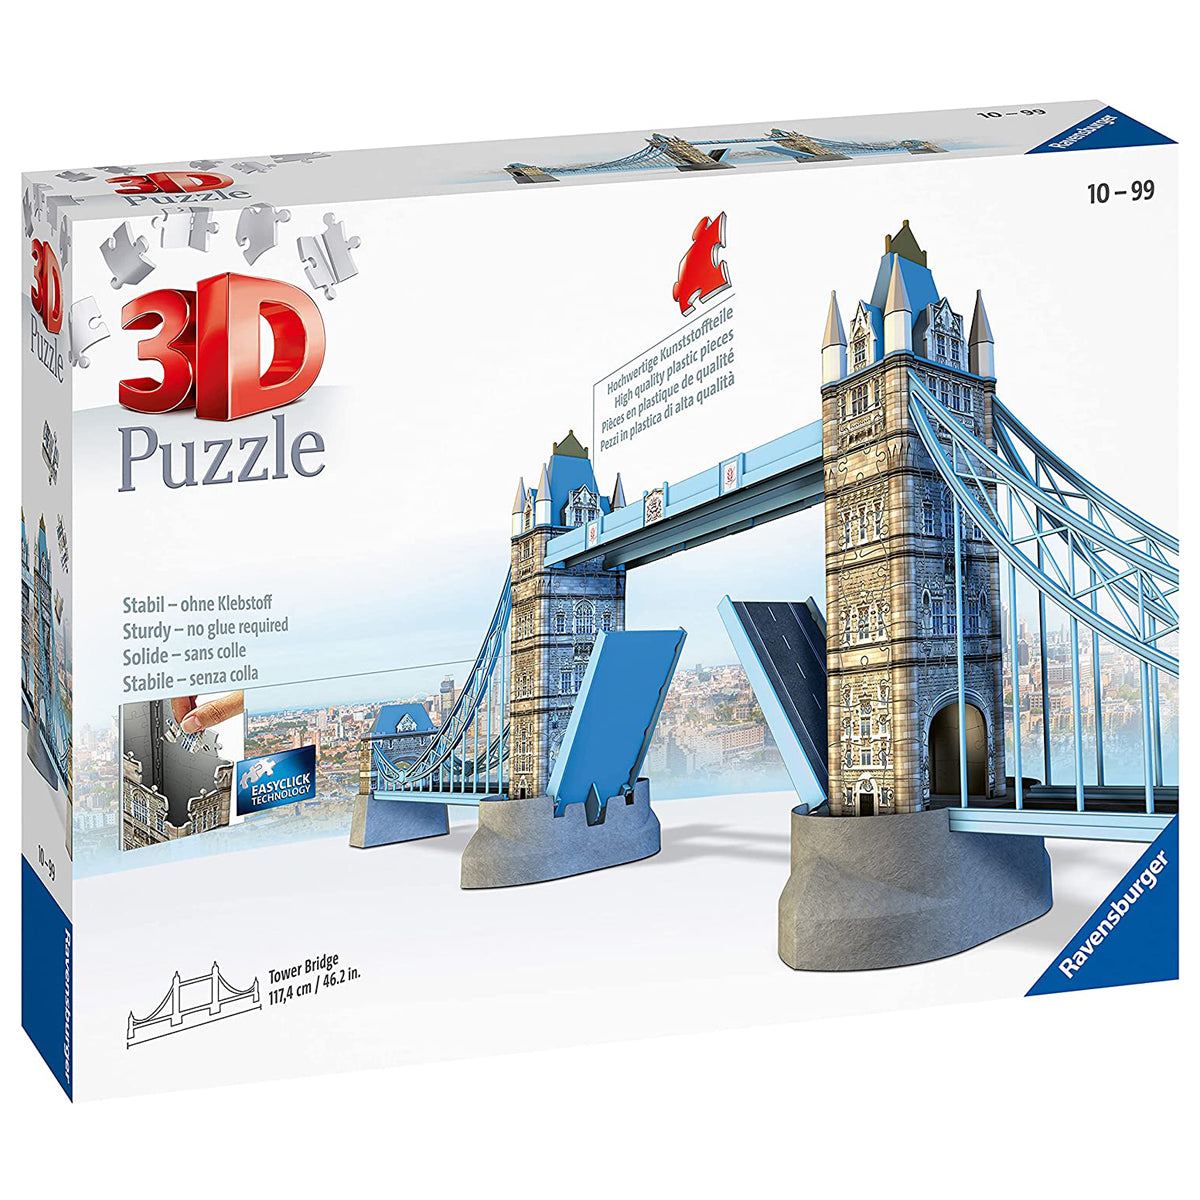 Models Kits  Puzzles & Jigsaws